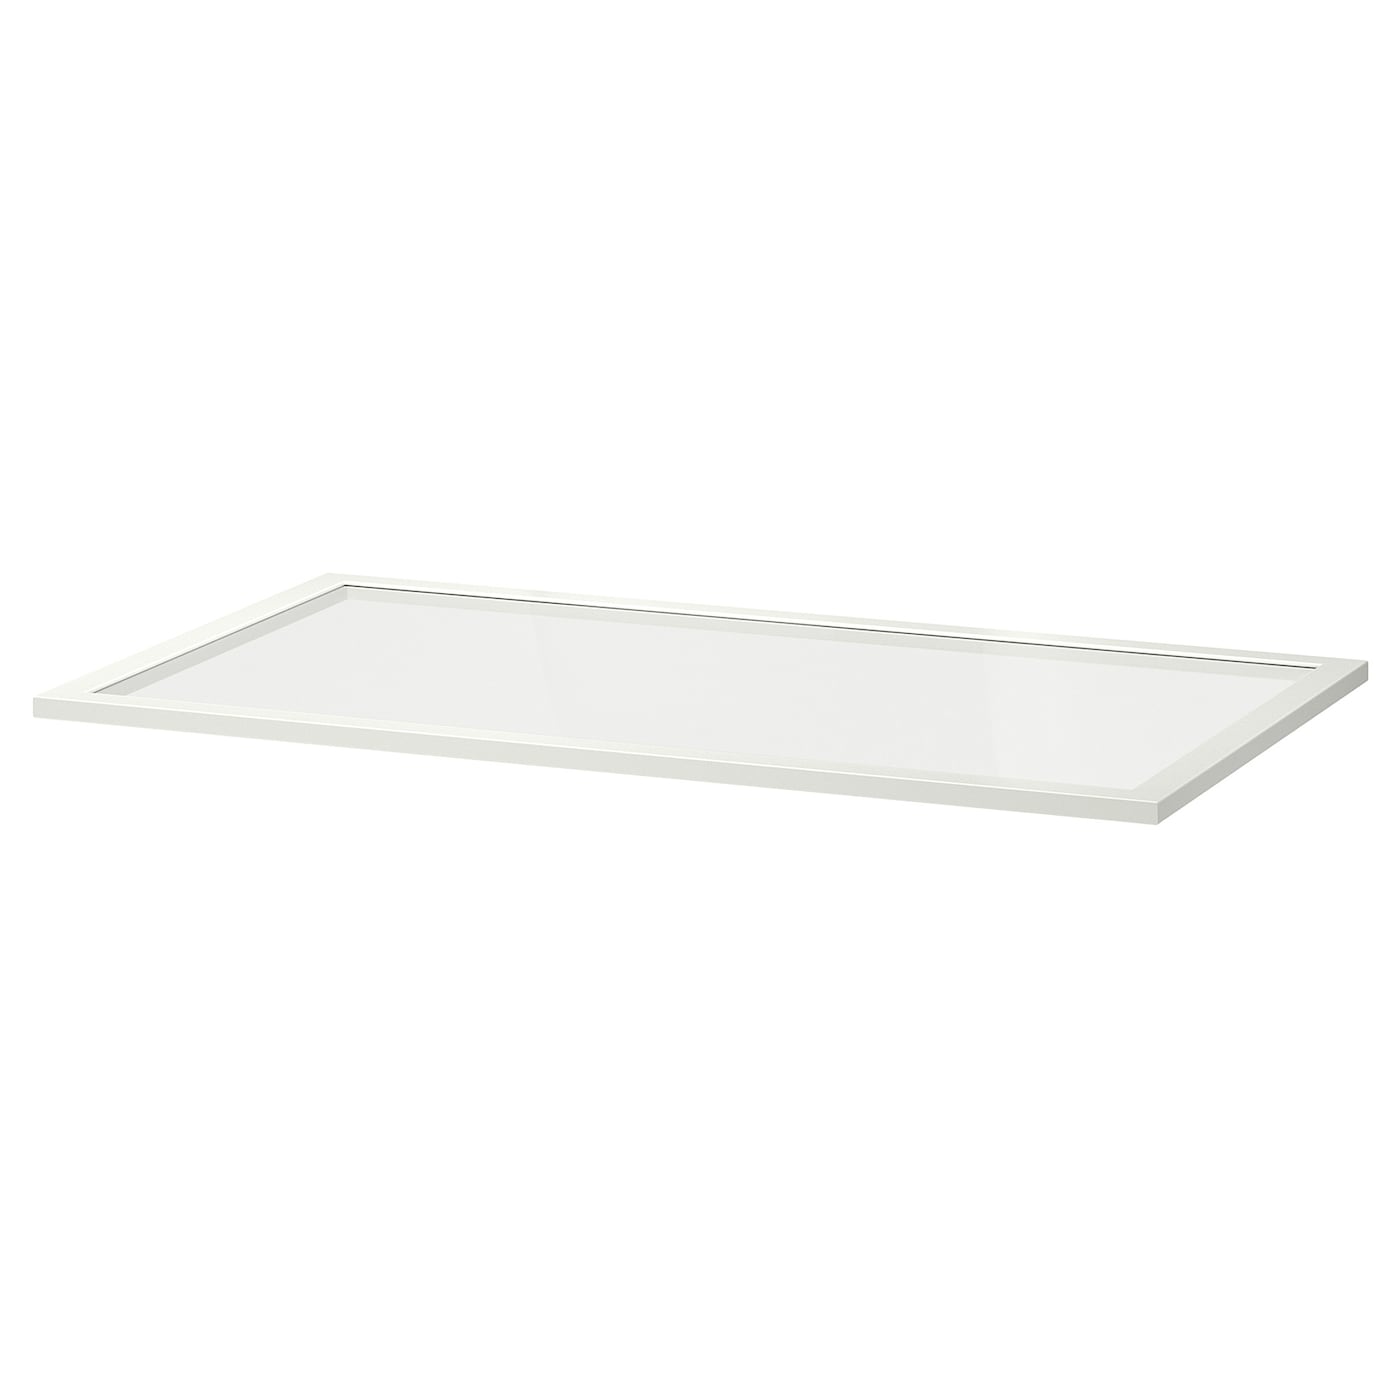 Полка стеклянная - IKEA KOMPLEMENT, 100x58 см, белый КОМПЛИМЕНТ ИКЕА